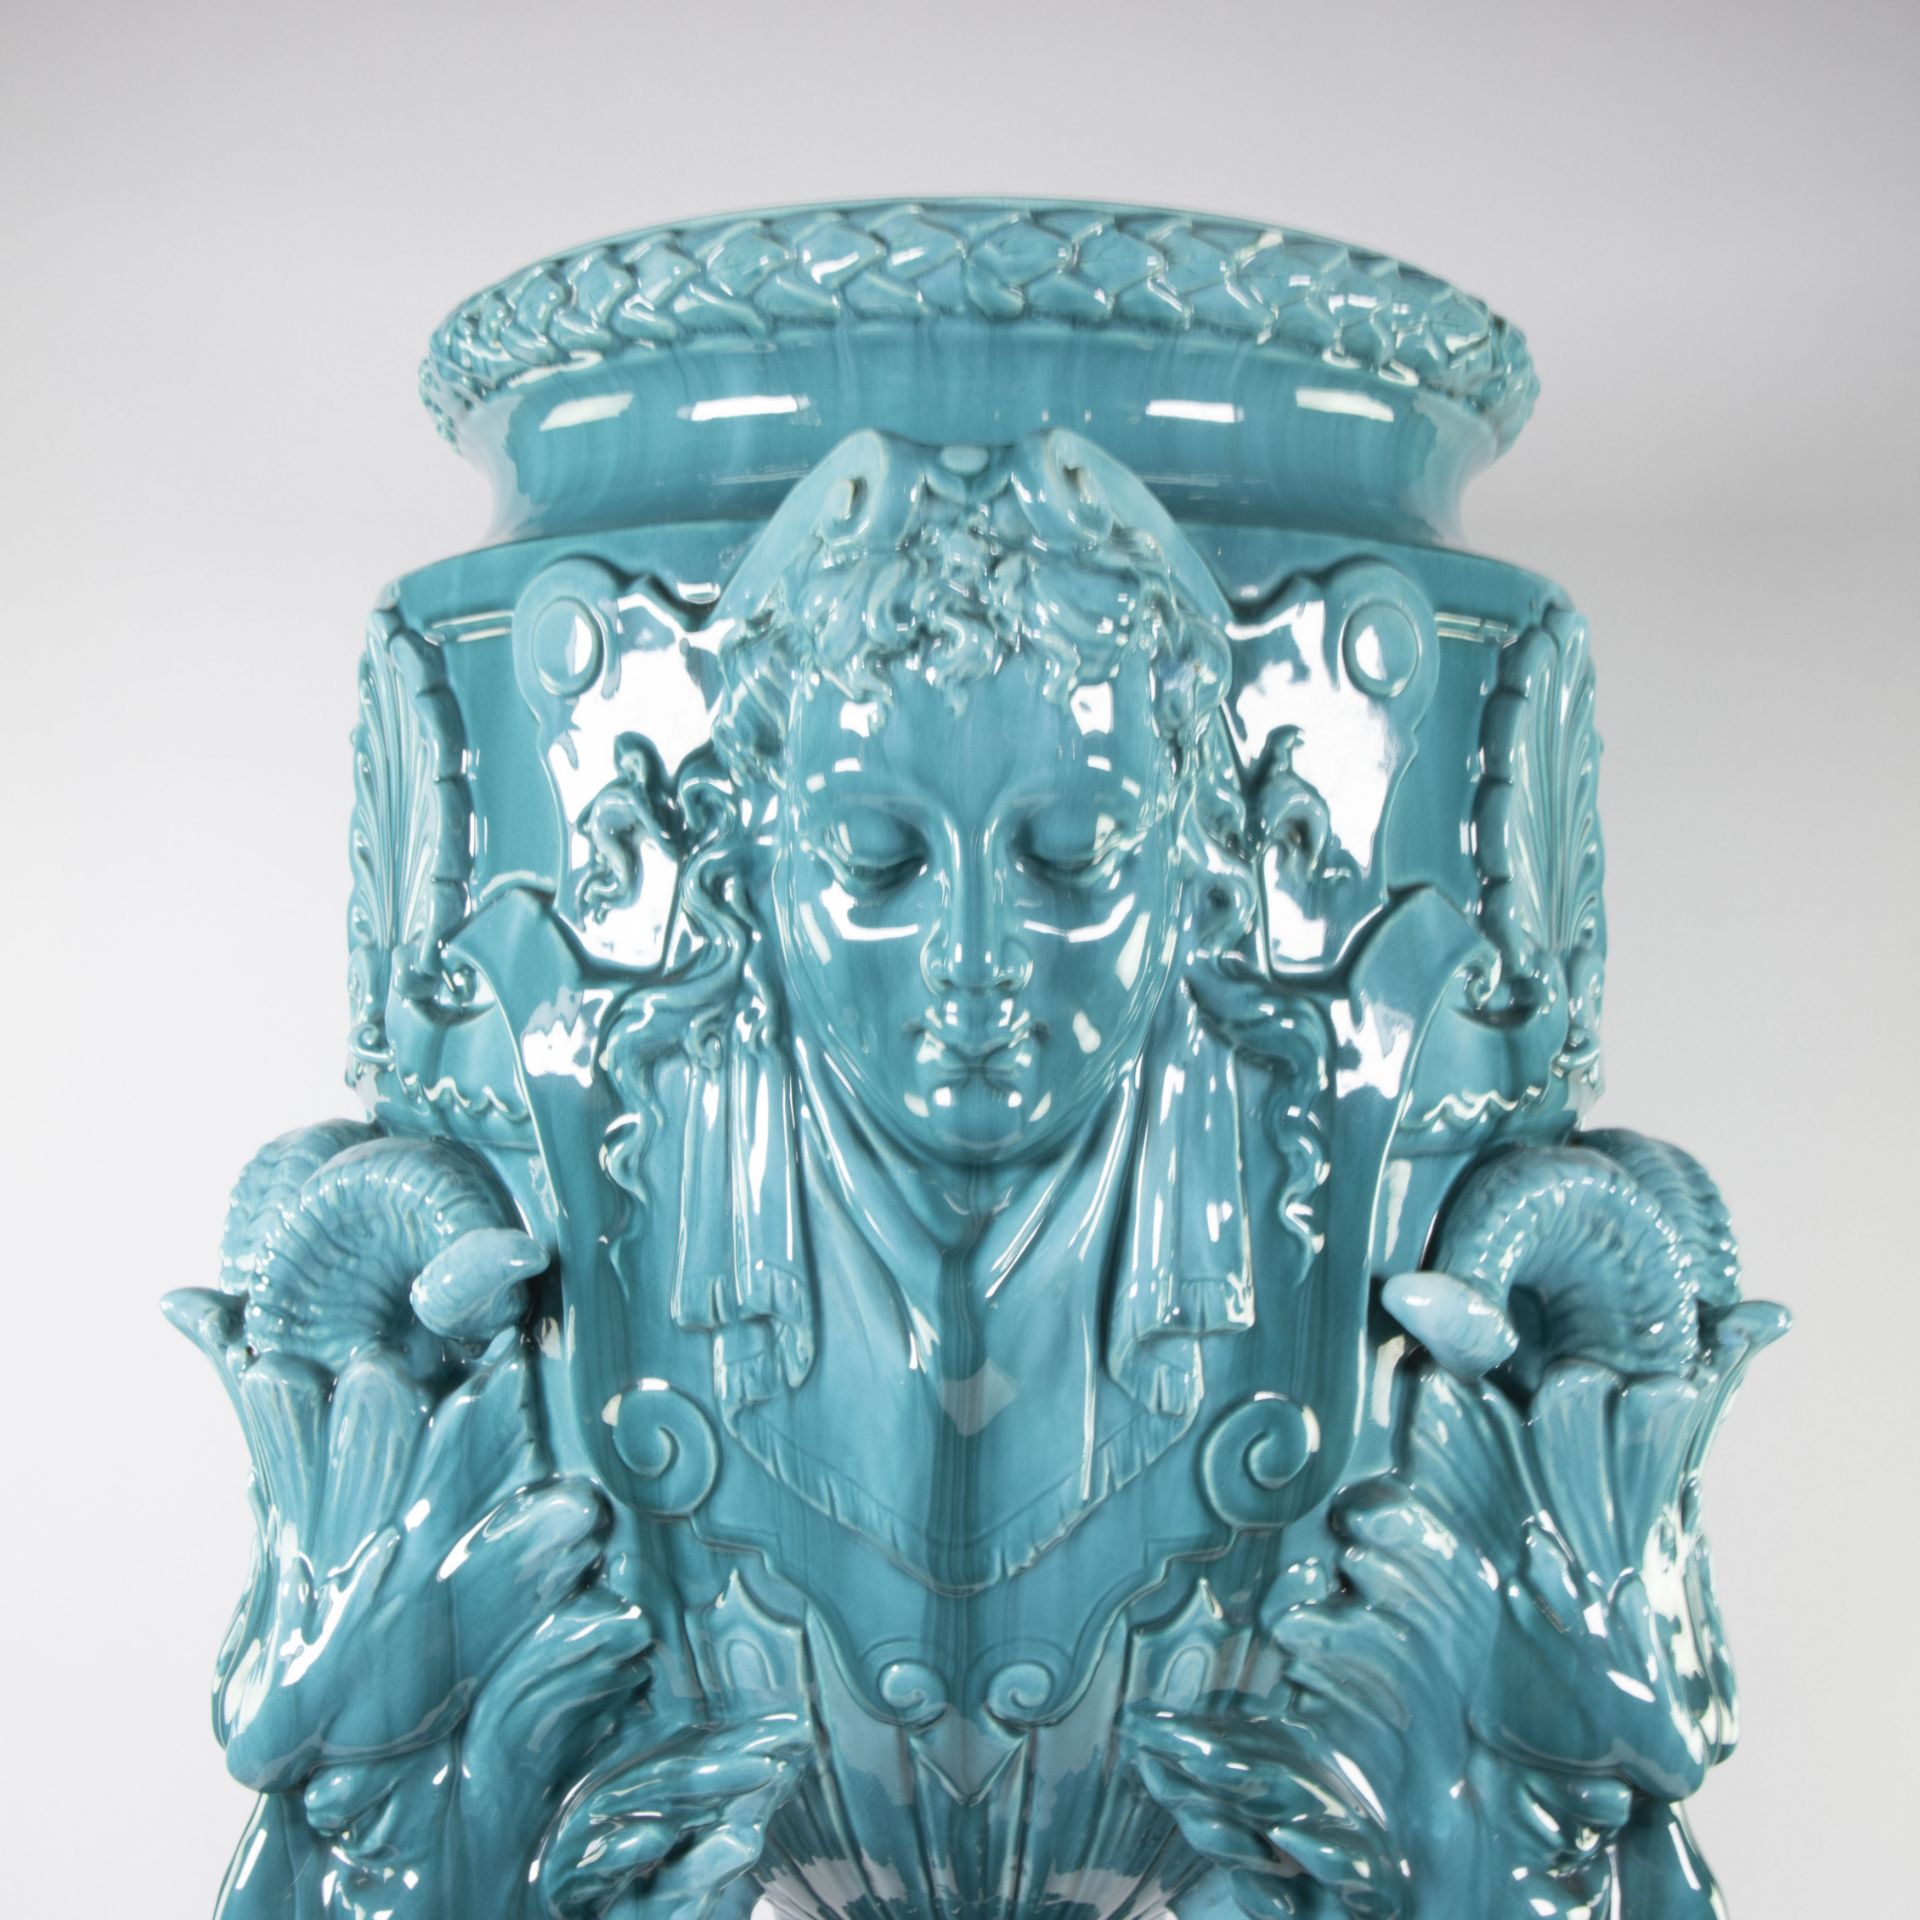 Théodore DECK (1823-1891) (attributed) Ceramic cachepot with stand in blue dripping glaze around 190 - Bild 2 aus 14